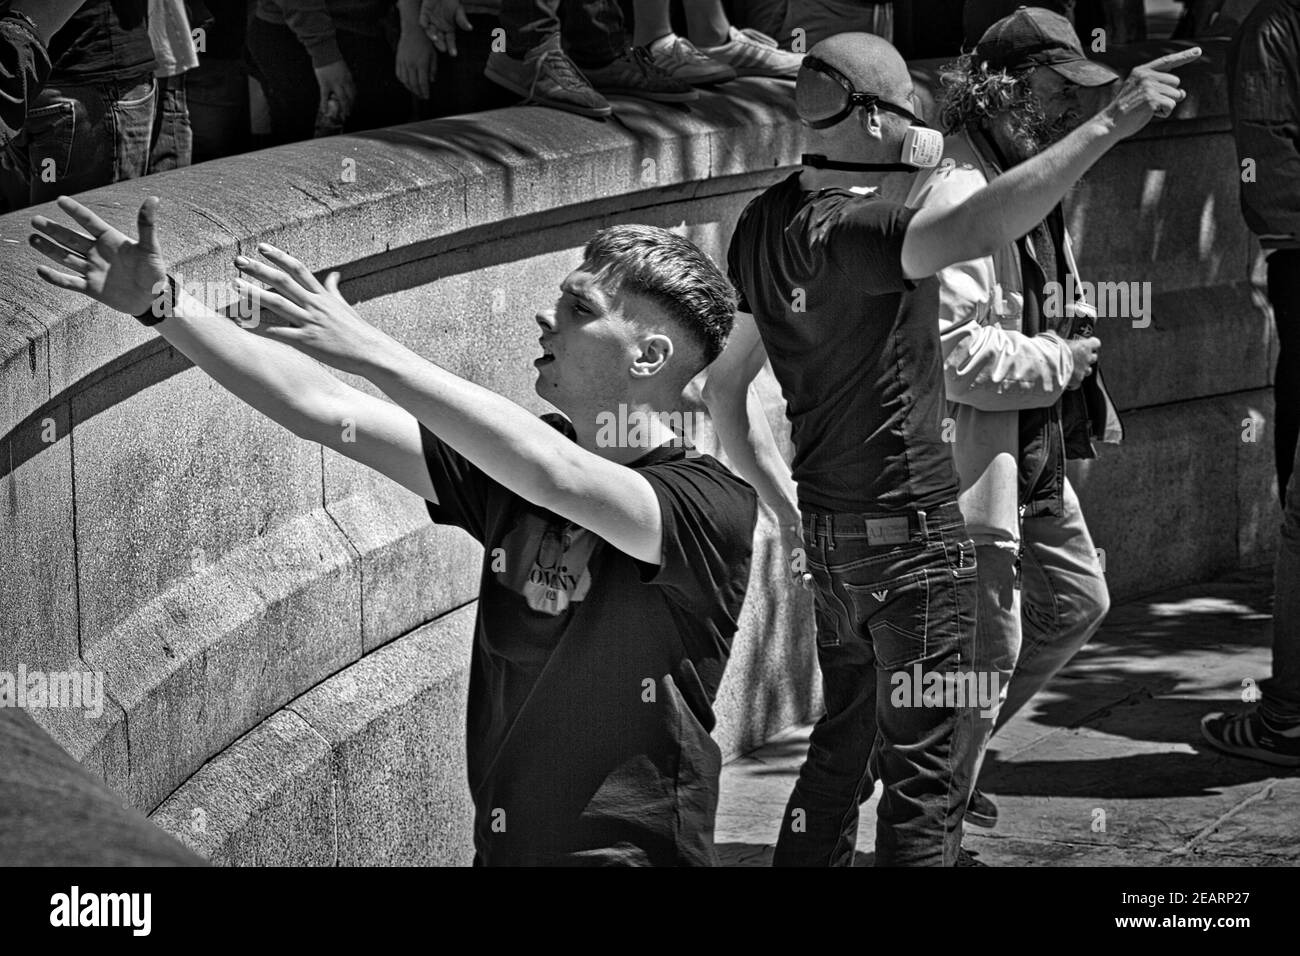 Londres 13 juin 2020 des manifestants de groupes d'extrême droite se sont affrontés avec des Demostrateurs de BLM et la police à Trafalgar Square Banque D'Images